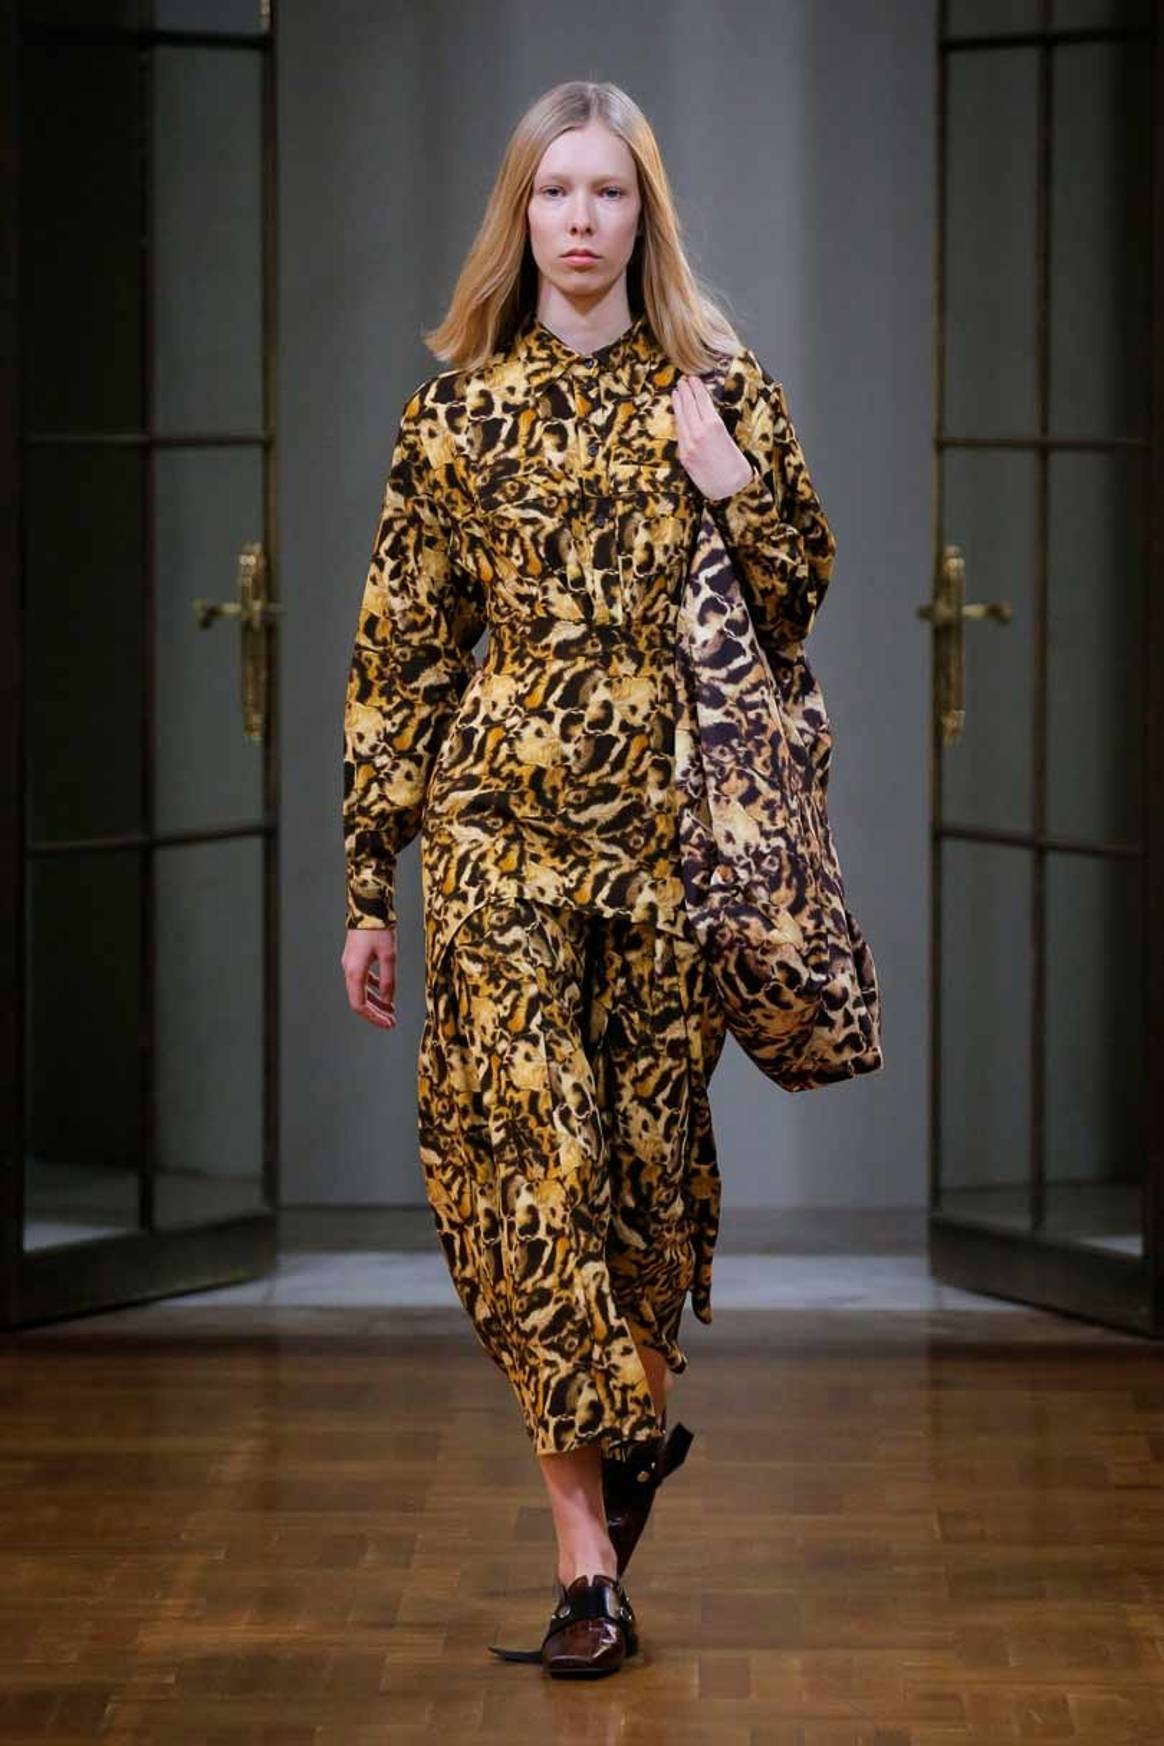 Victoria Beckham austera y DVF optimista en la Semana de la Moda de NY